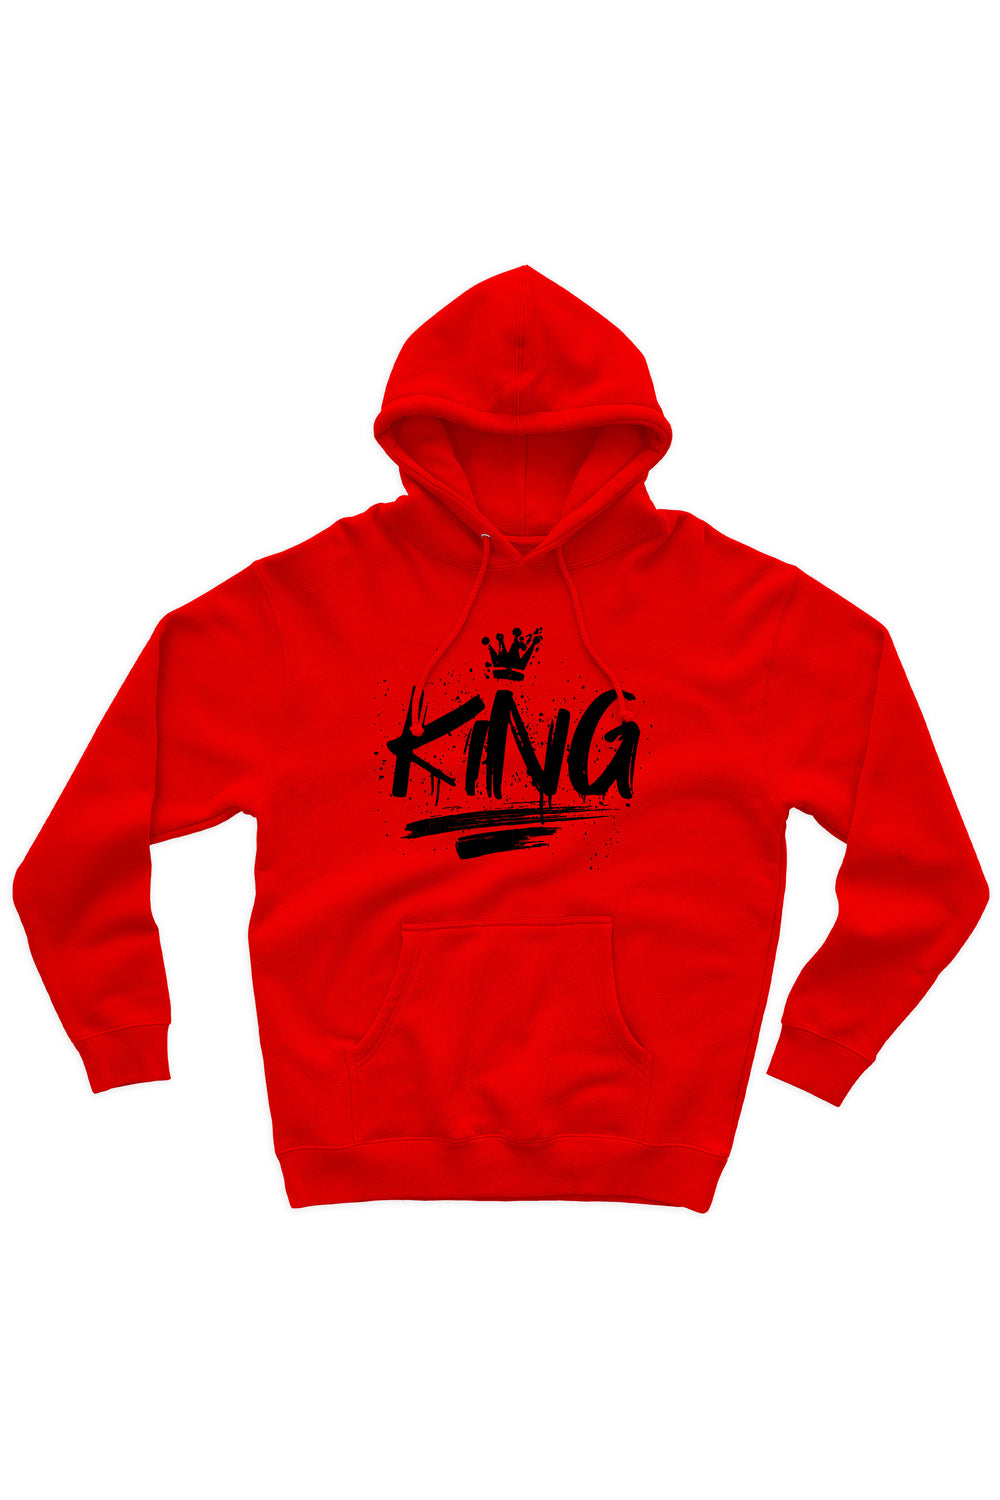 King Hoodie (Black Logo) - Zamage